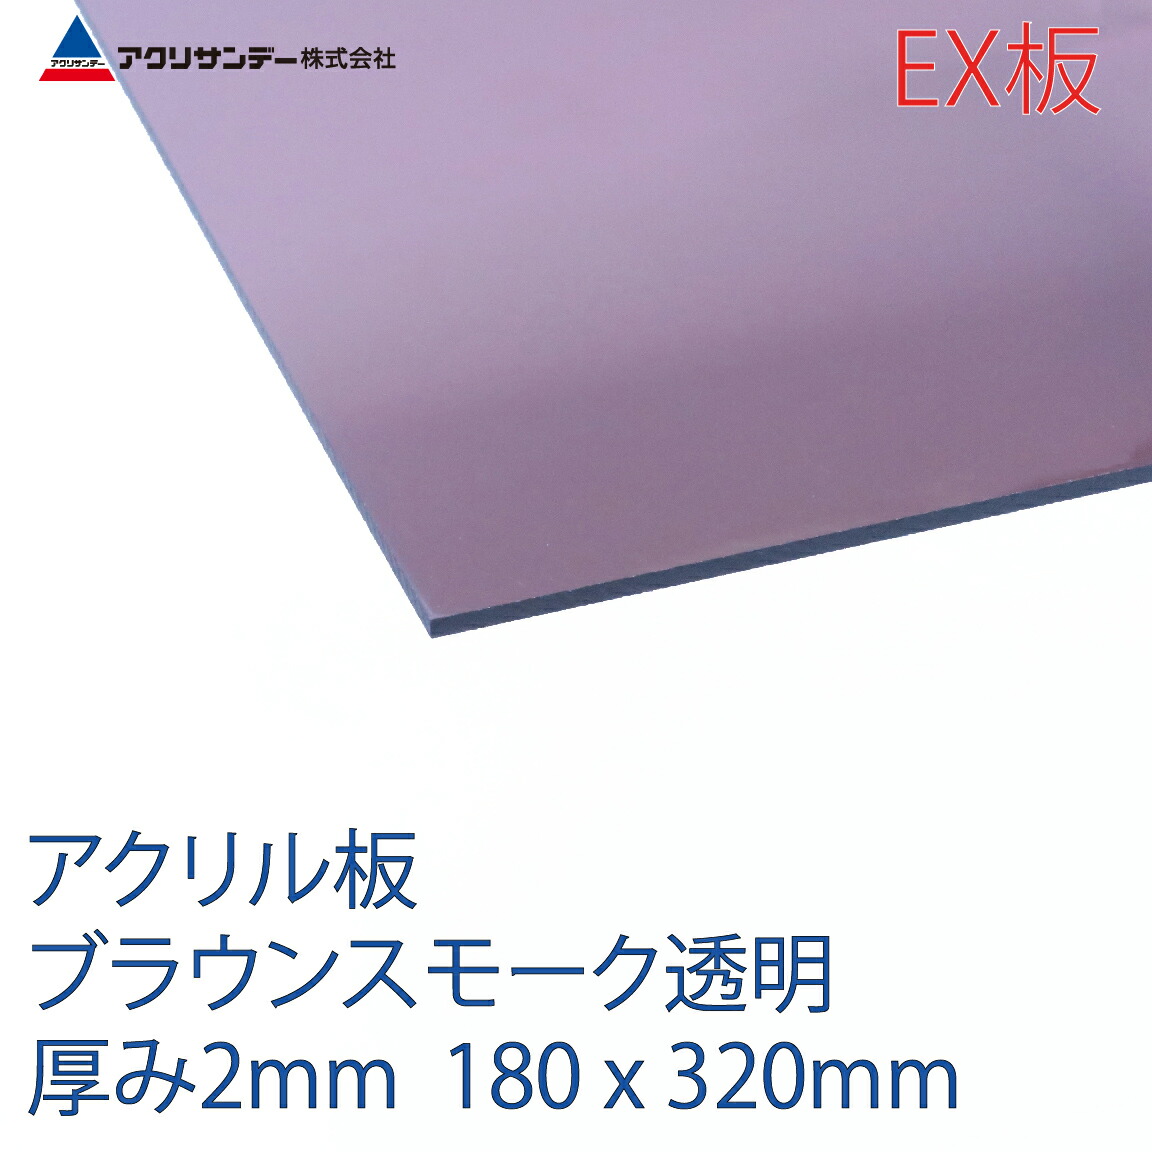 アクリサンデーEX板 アクリル ブラウンスモーク(EX550) 透明 厚み2mm 180×320mm 押出グレード SSサイズ 連続キャスト製法 プラスチック 色板 DIY